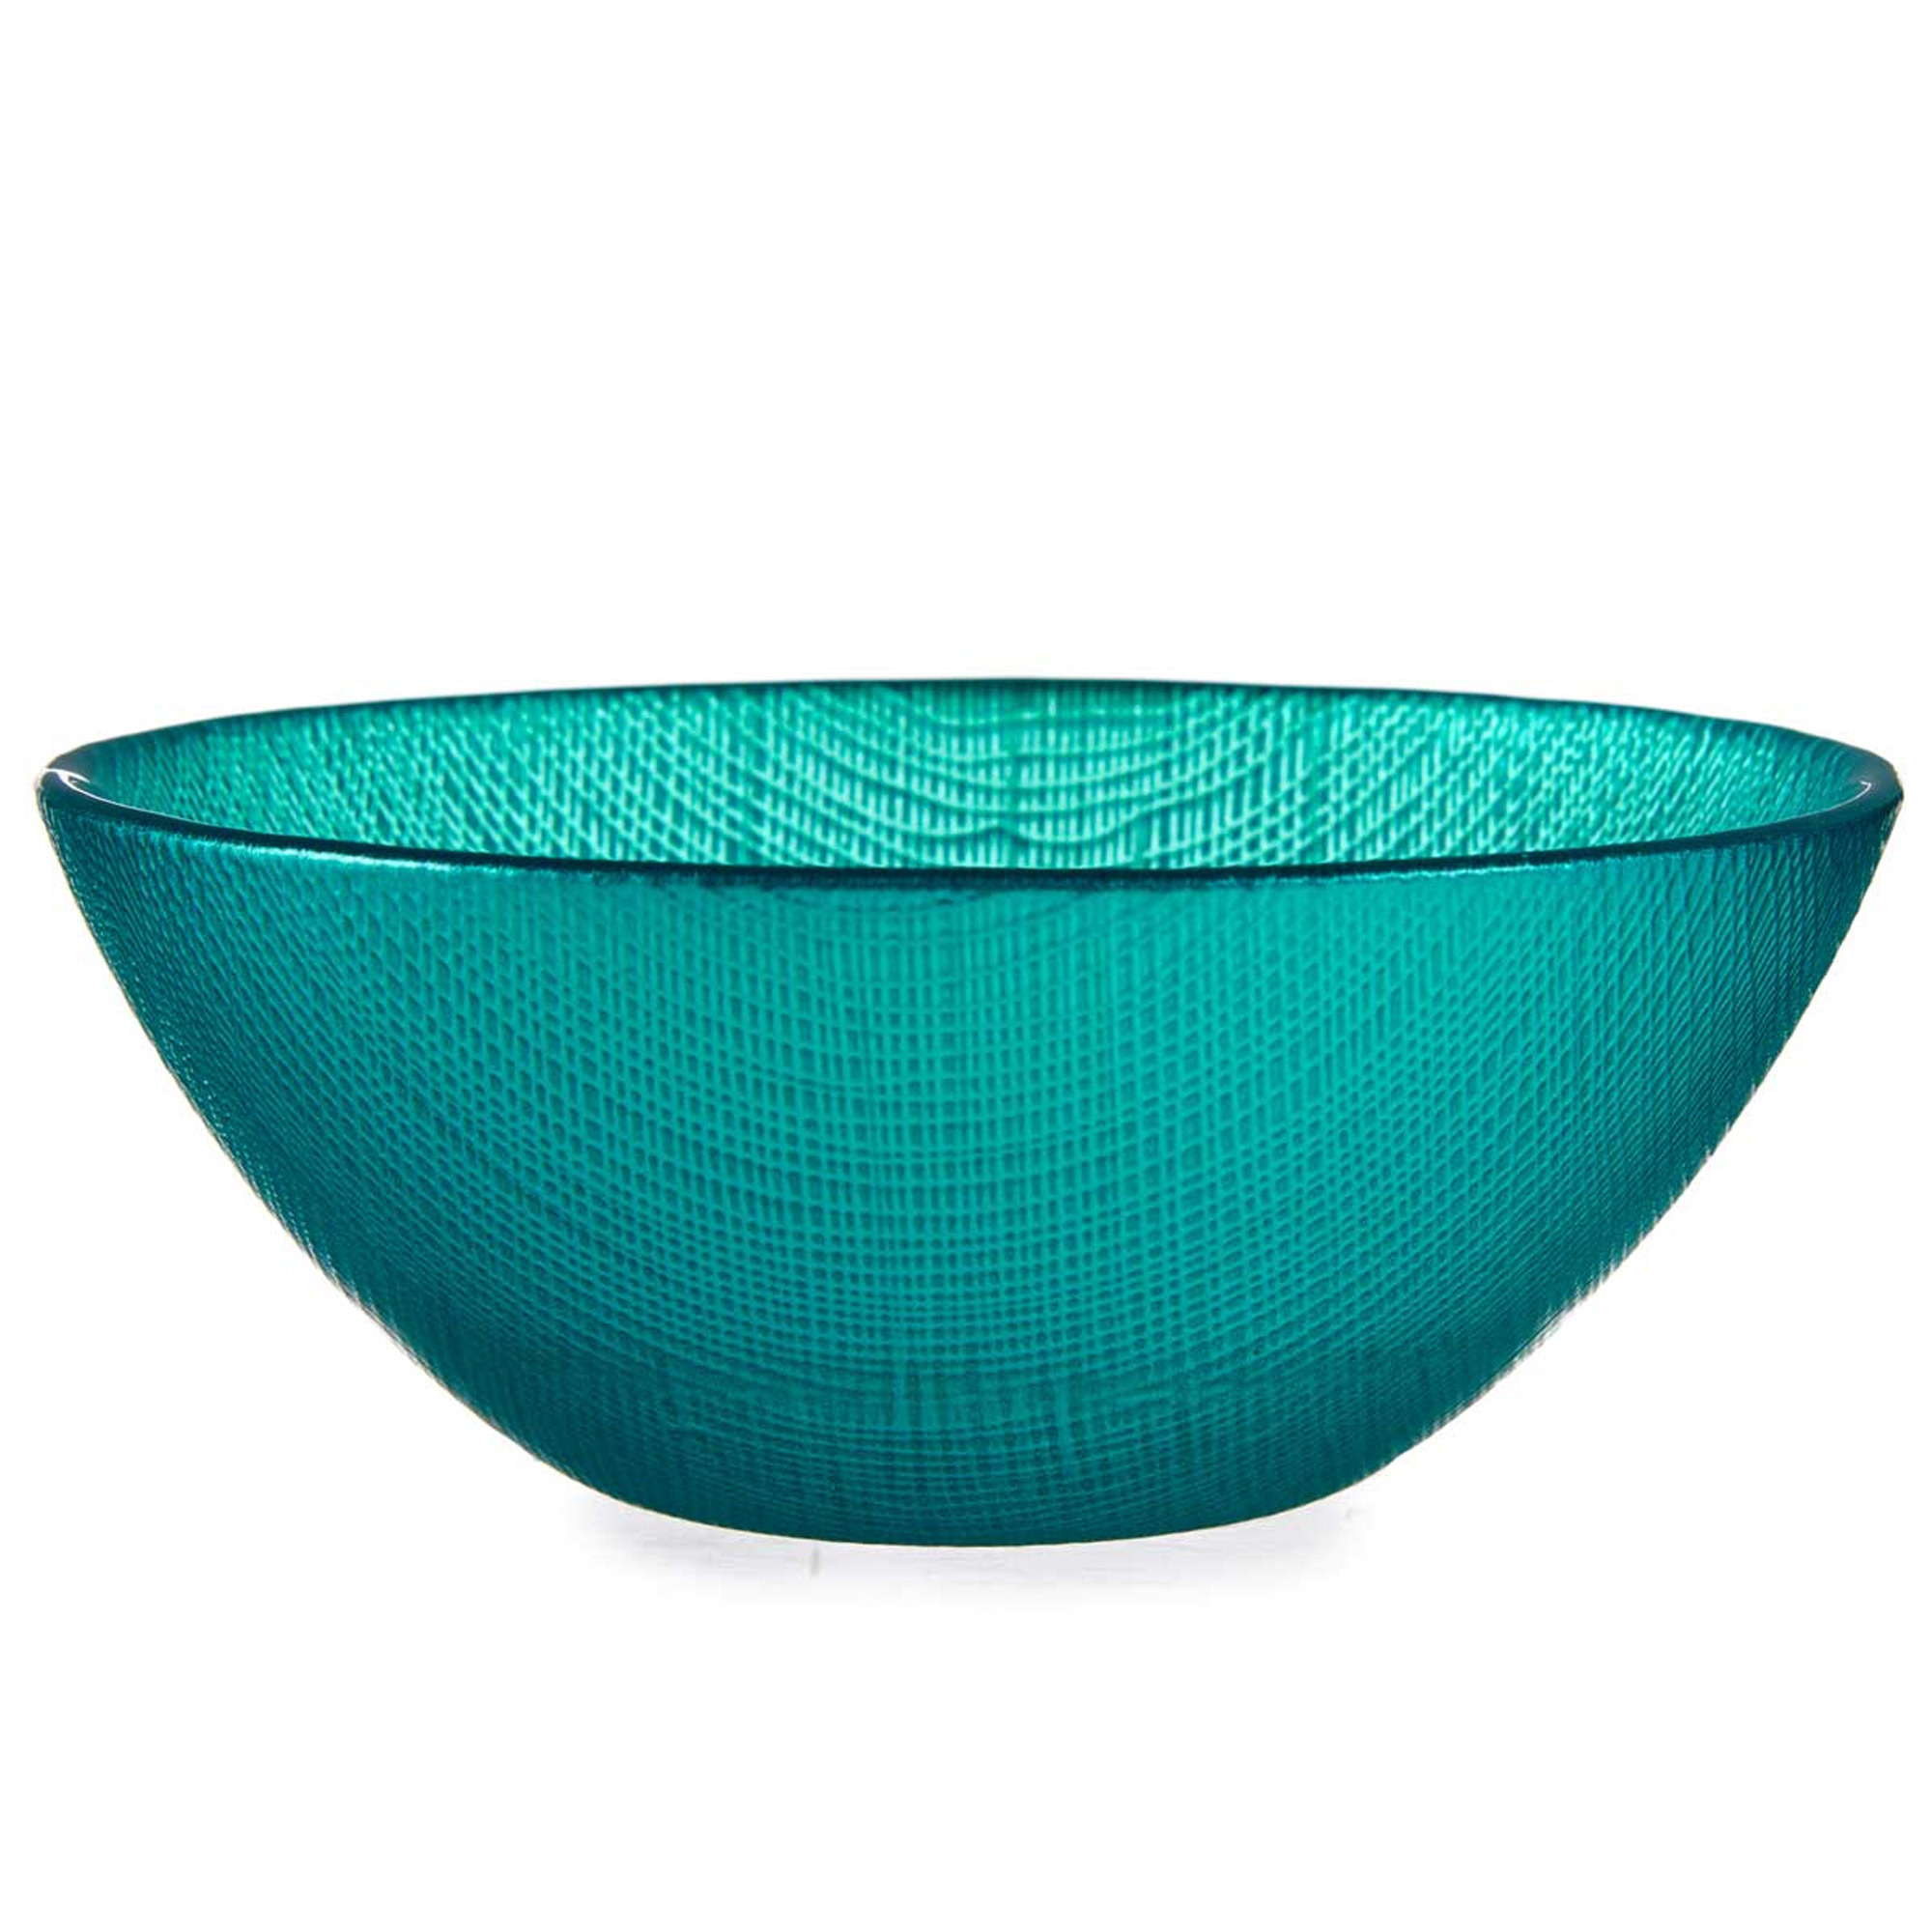 Vivalto Kommetjes/serveer schaaltjes - Murano - glas - D15 x H6 cm - turquoise blauw - Stapelbaar -